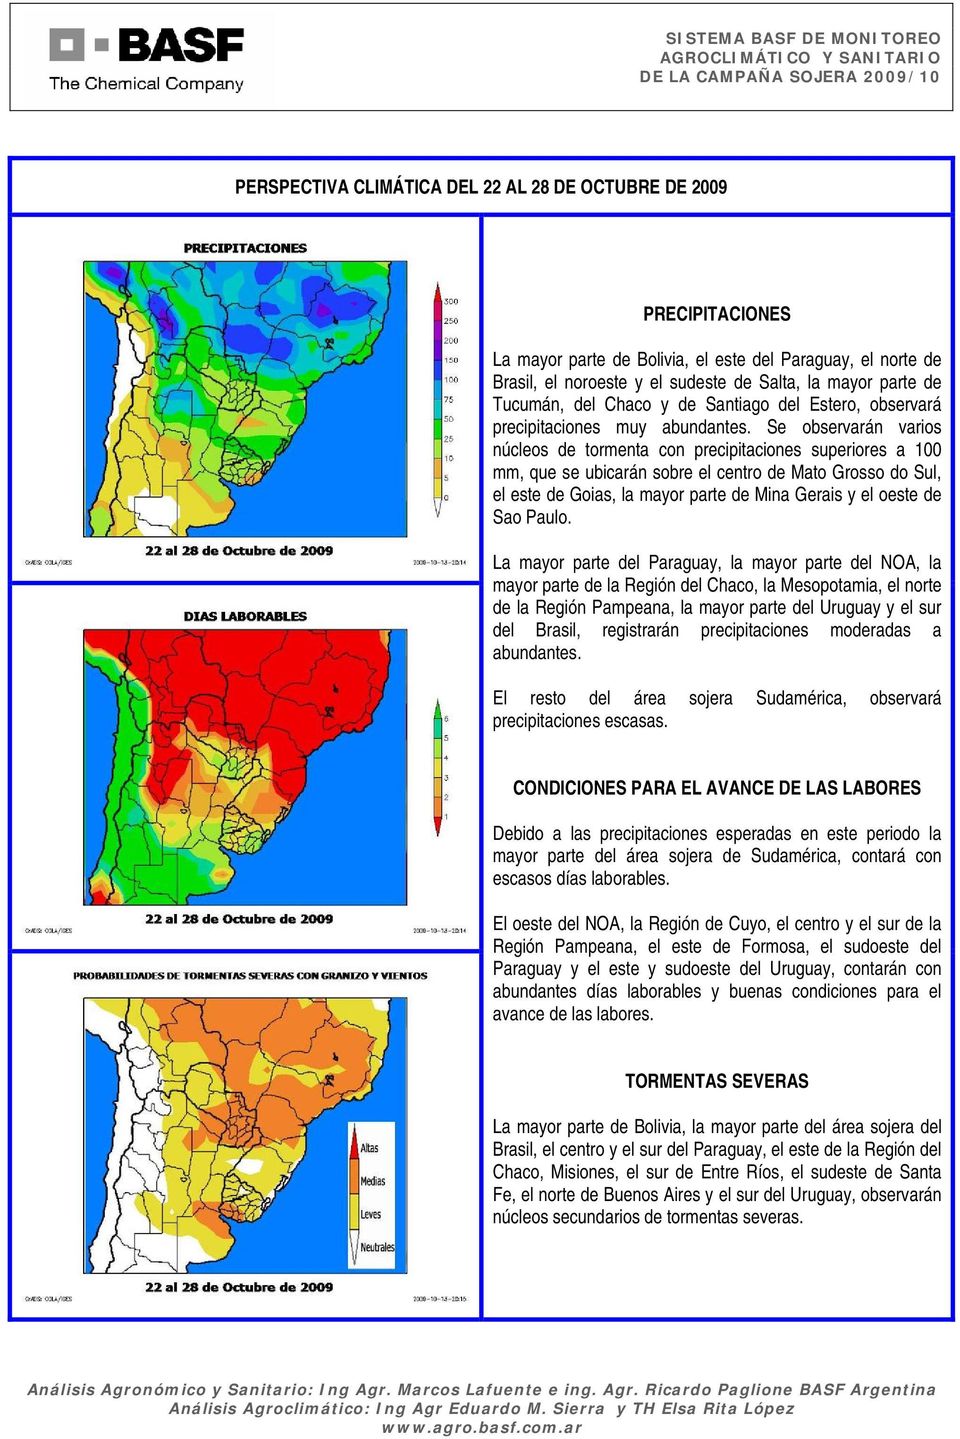 Se observarán varios núcleos de tormenta con precipitaciones superiores a 100 mm, que se ubicarán sobre el centro de Mato Grosso do Sul, el este de Goias, la mayor parte de Mina Gerais y el oeste de